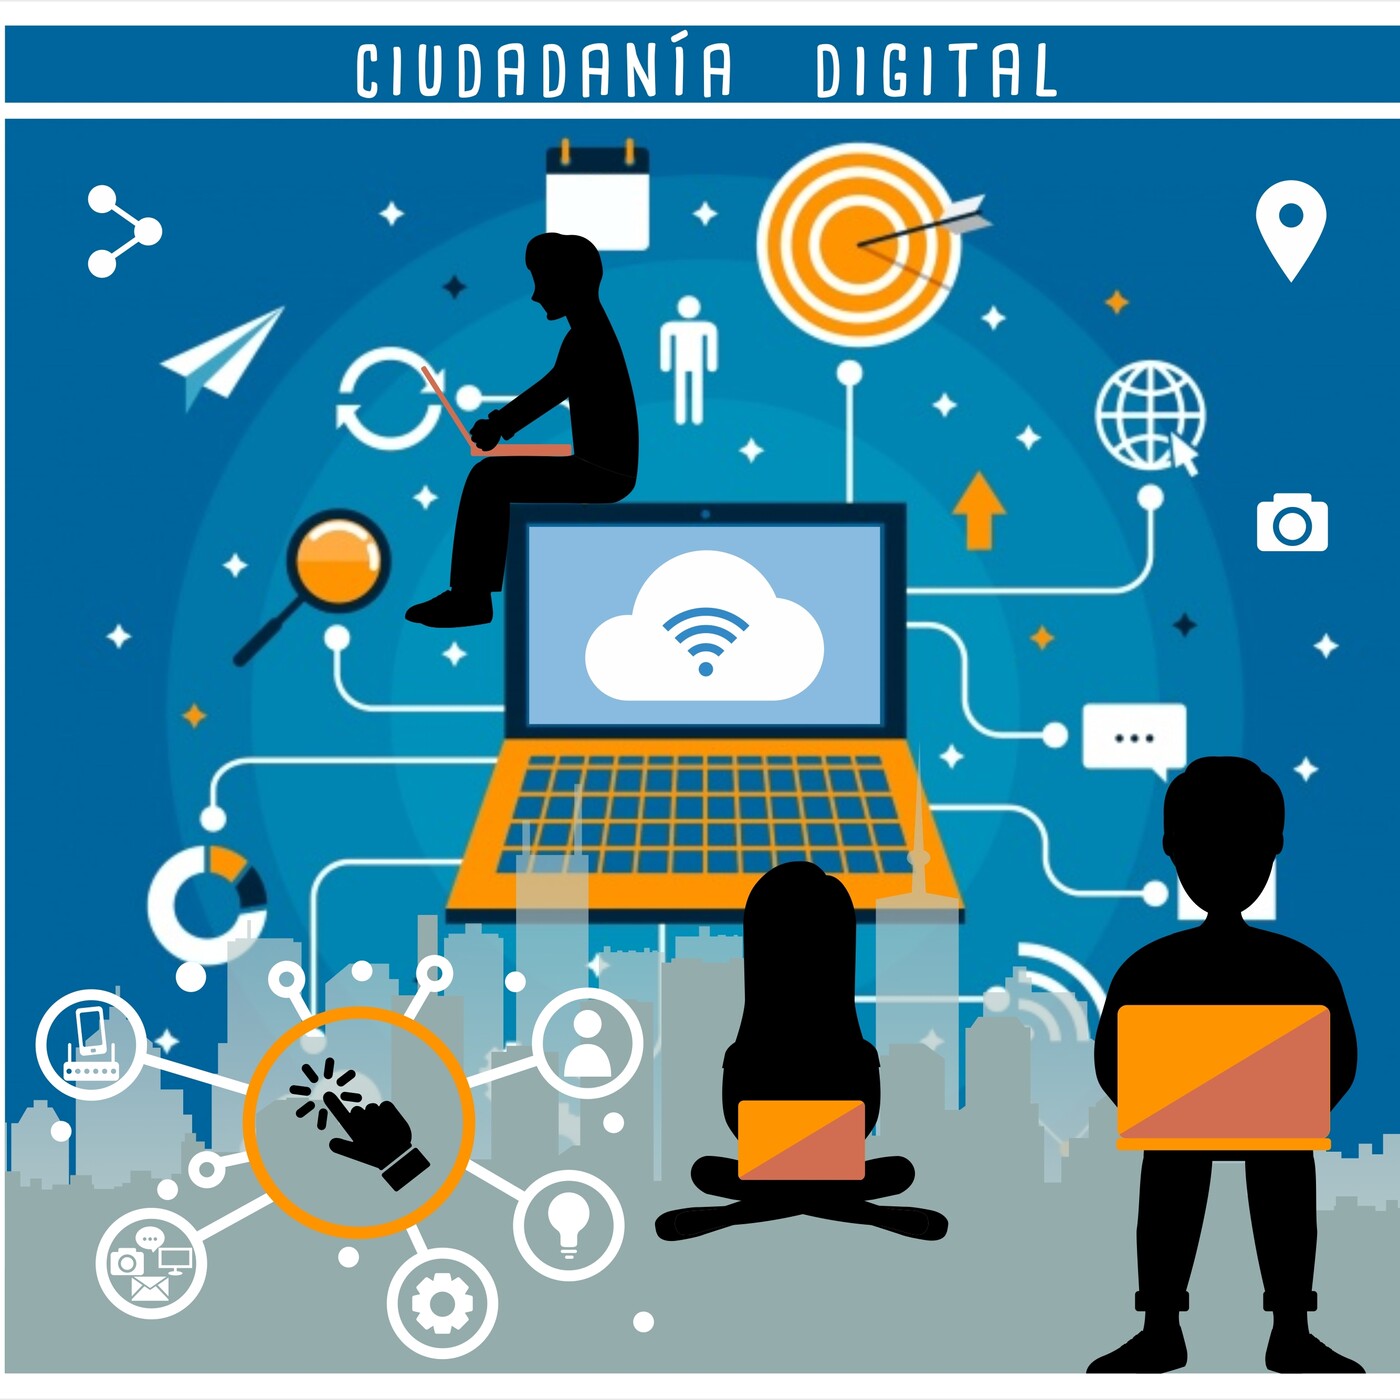 Características de la ciudadanía digital peruana